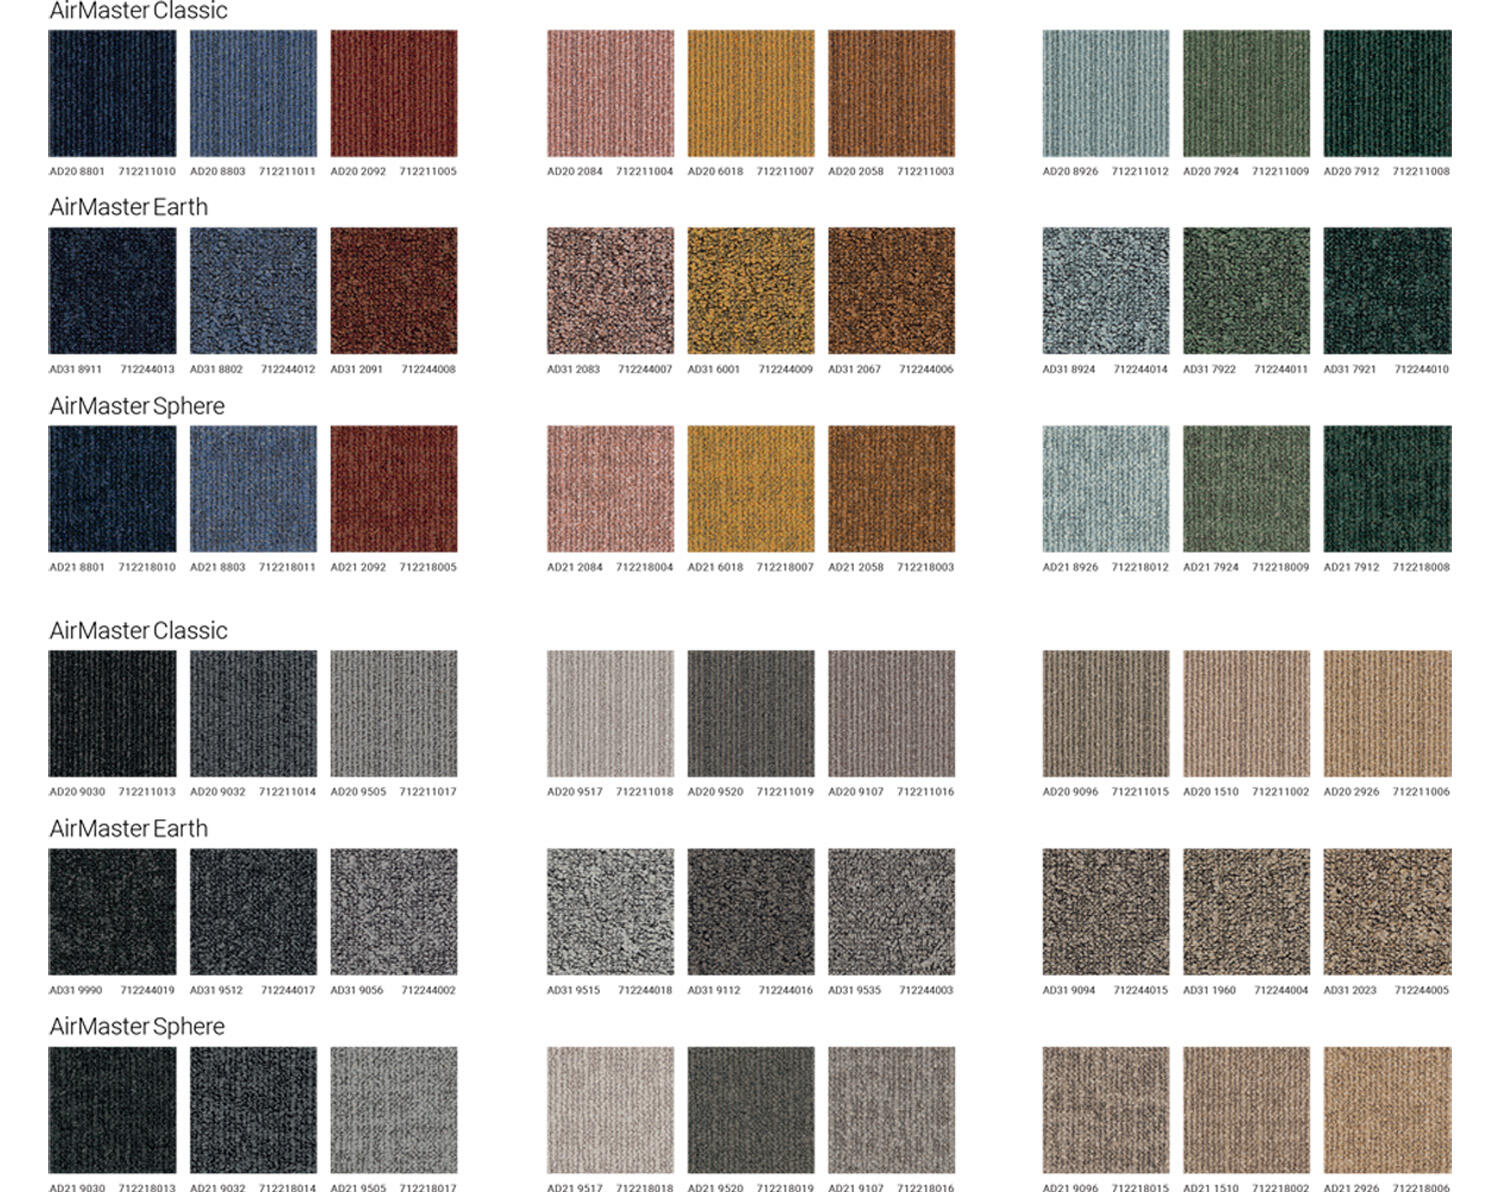 Abbinamento alla palette di colori delle collezioni di pavimenti tessili a quadrotte AirMaster Classic, Earth e Sphere di DESSO